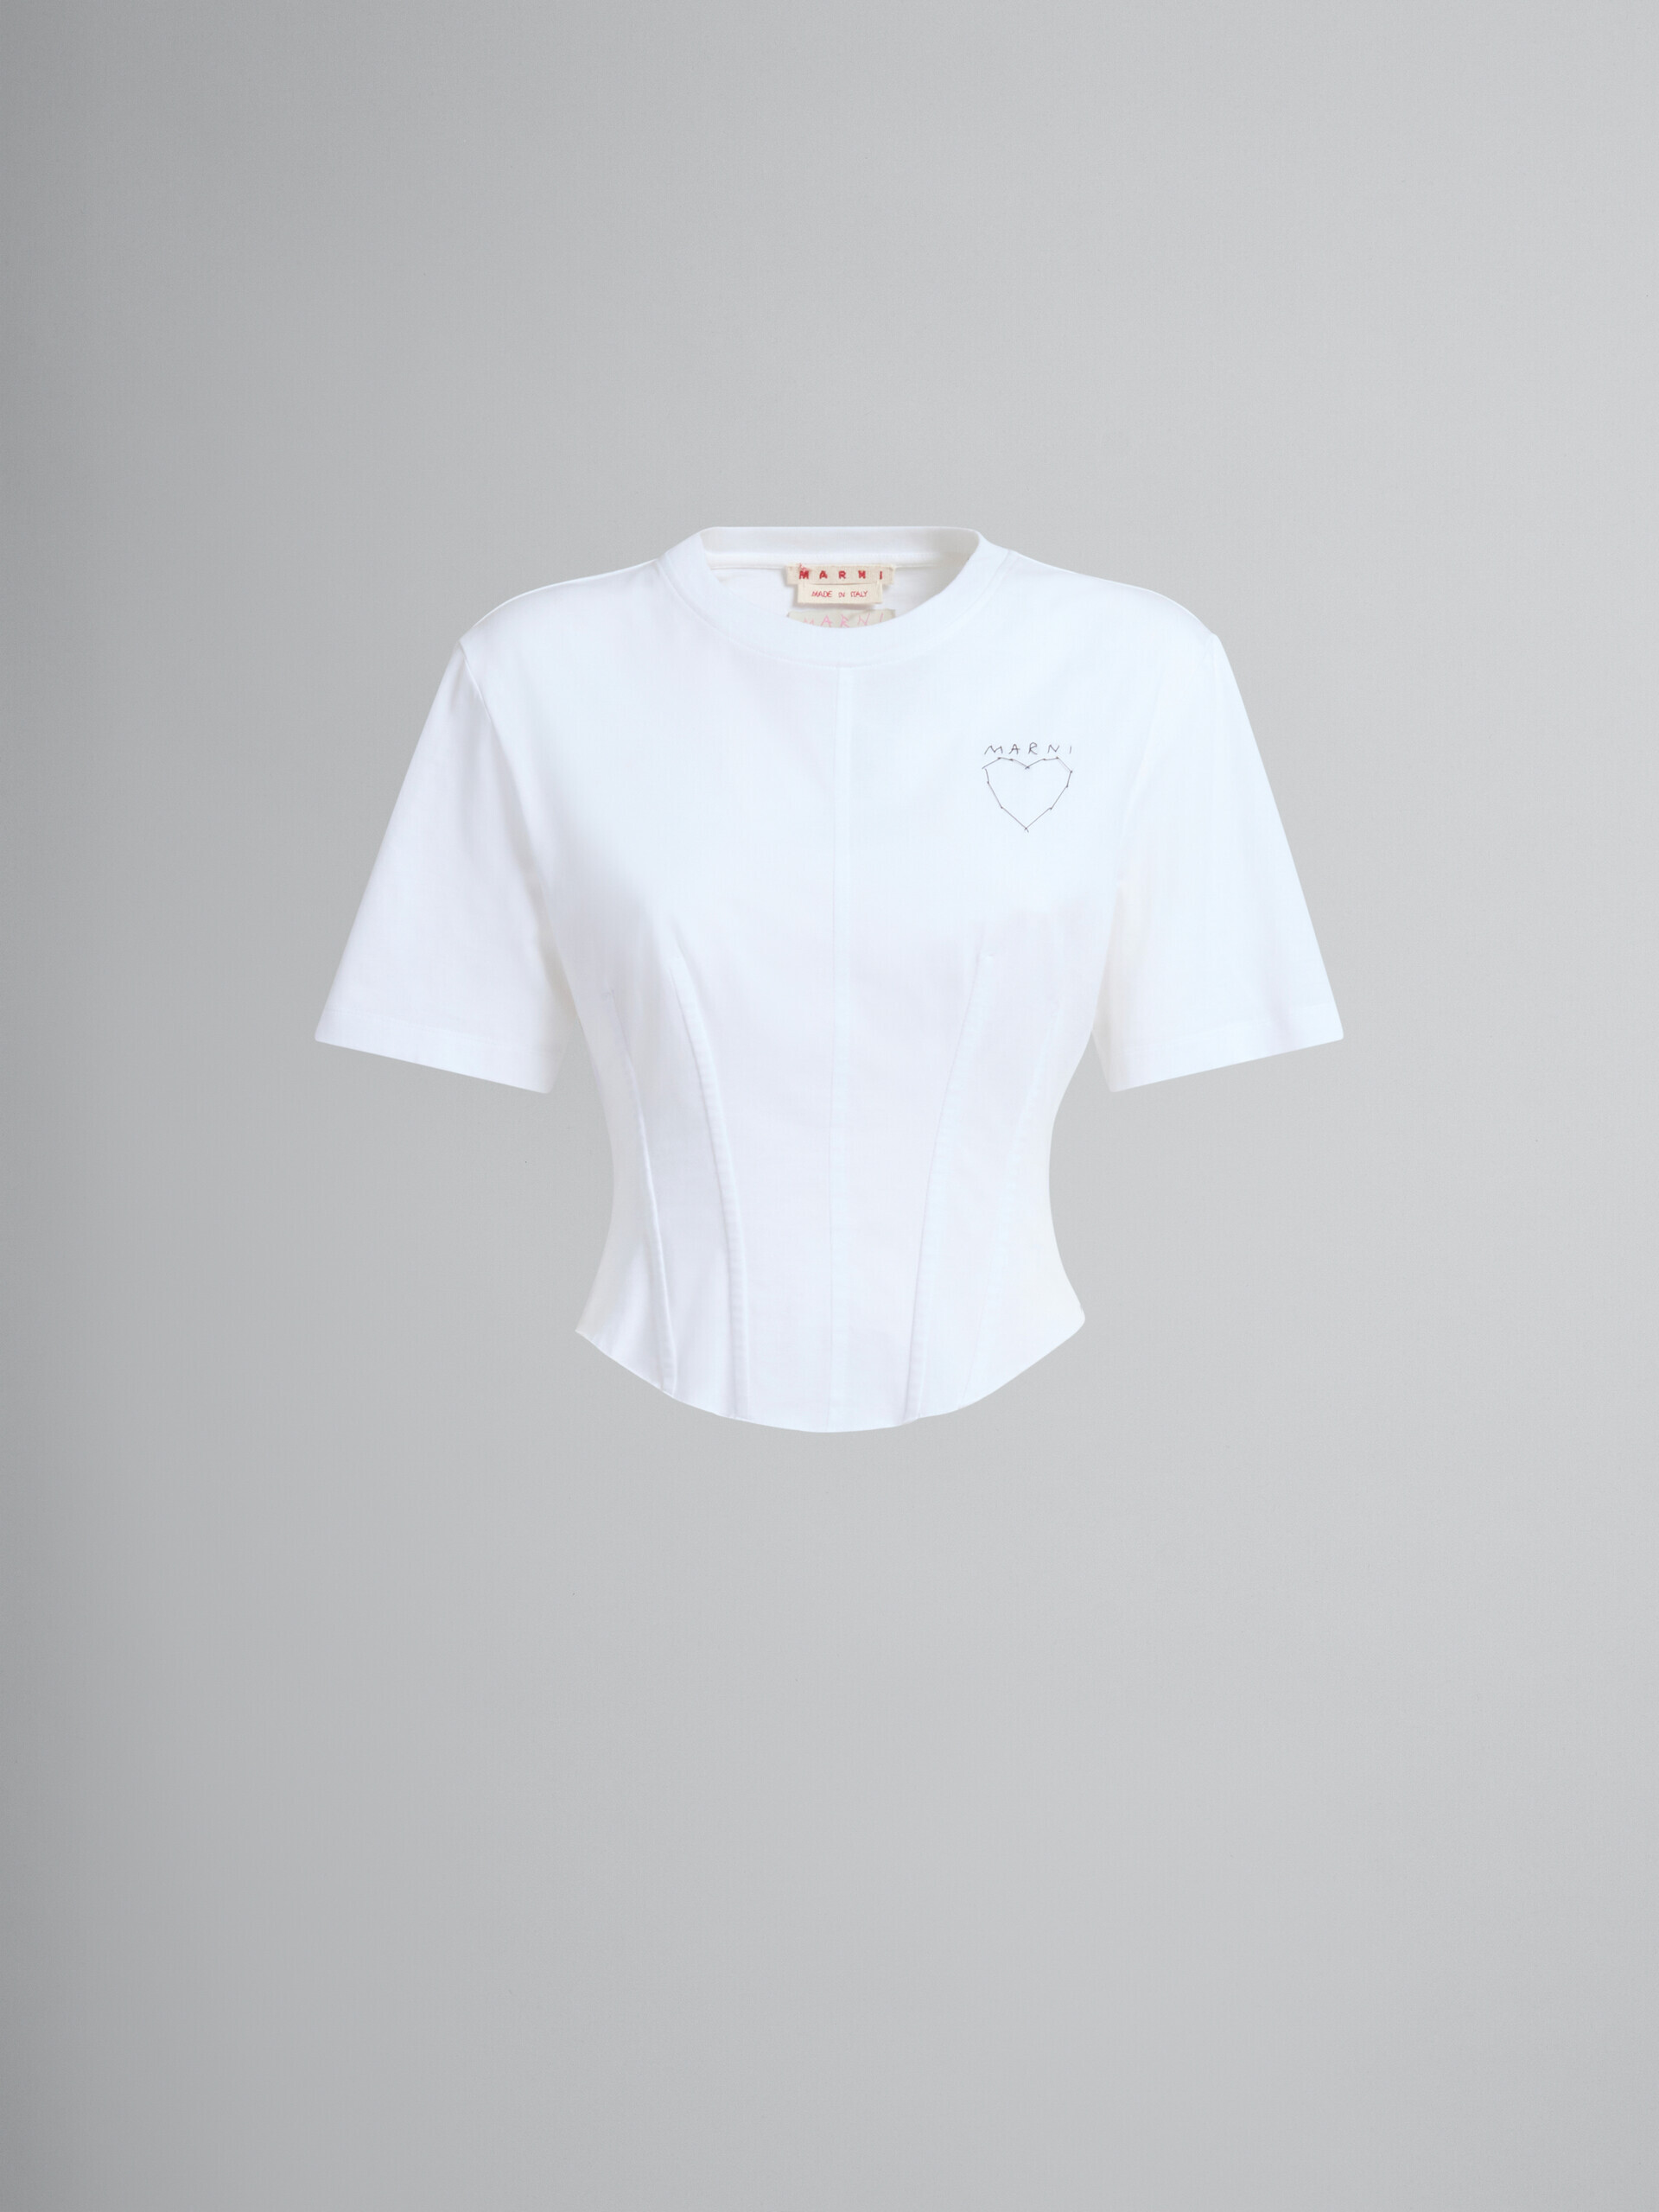 T-shirt bustier en coton organique blanc - T-shirts - Image 2